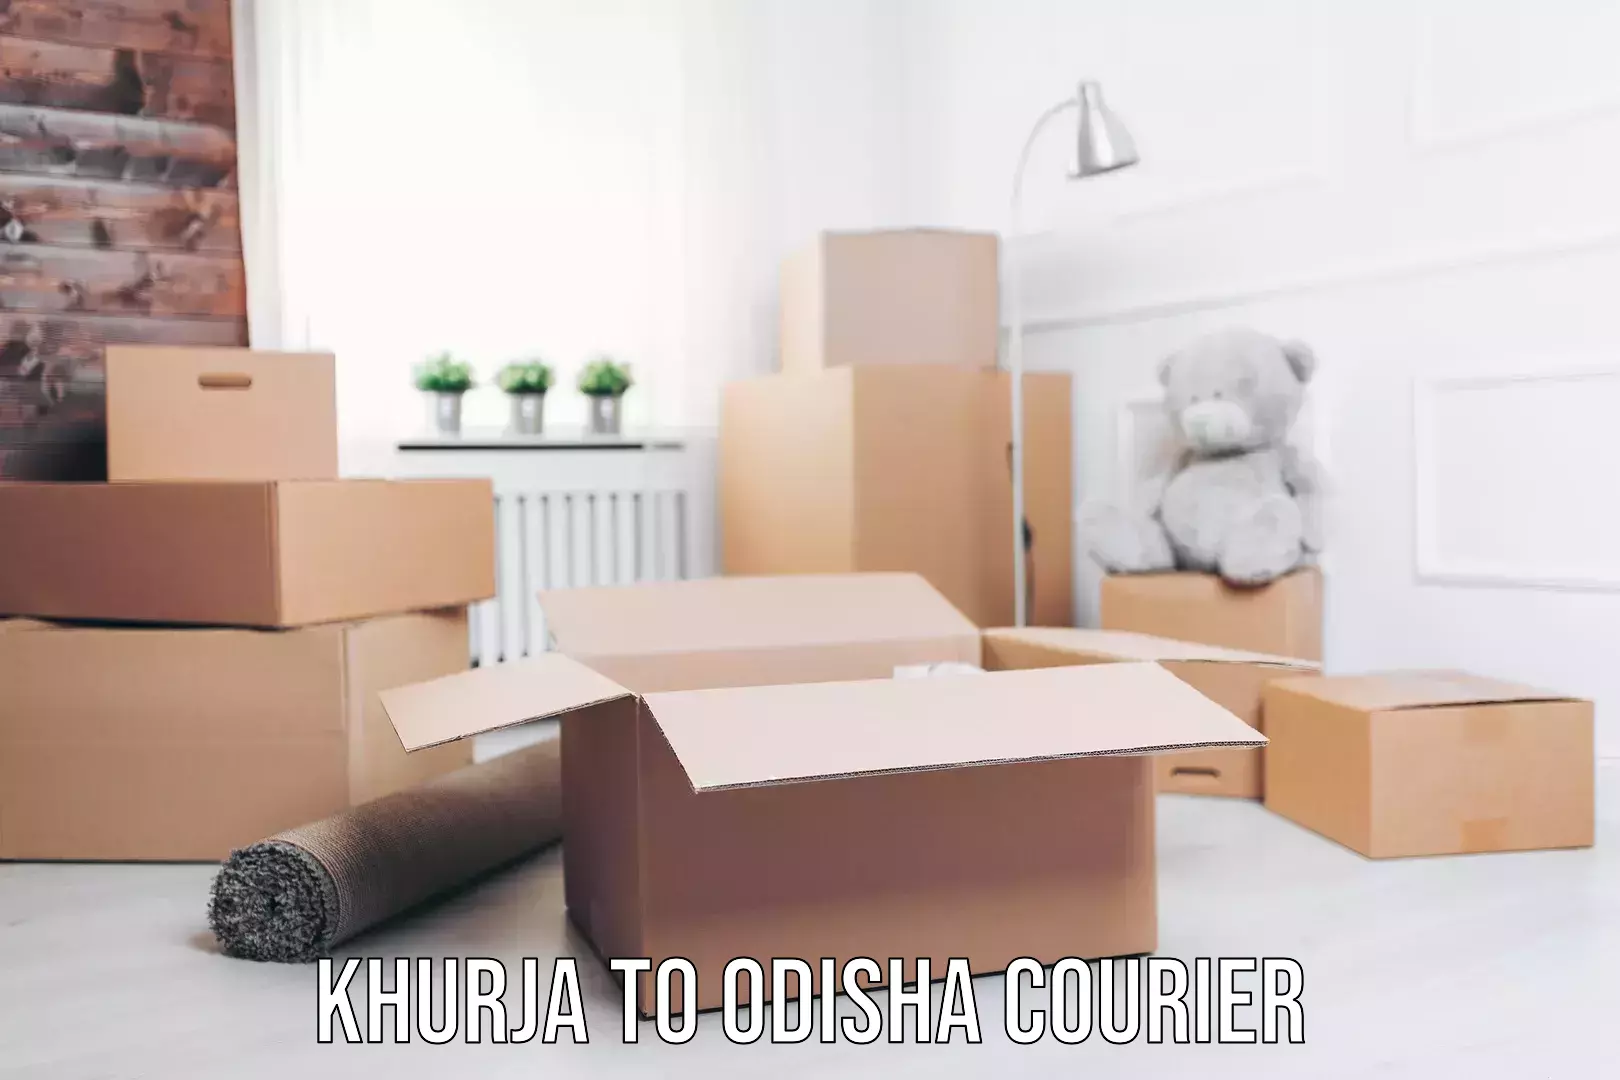 Home goods moving company Khurja to Odisha